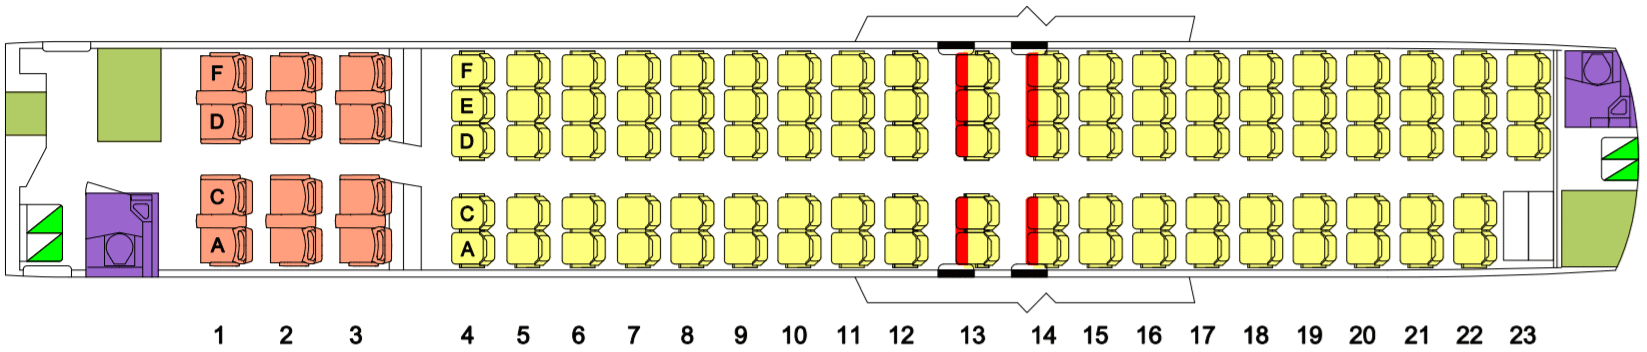 QantasLink B717 Seat Map (110)